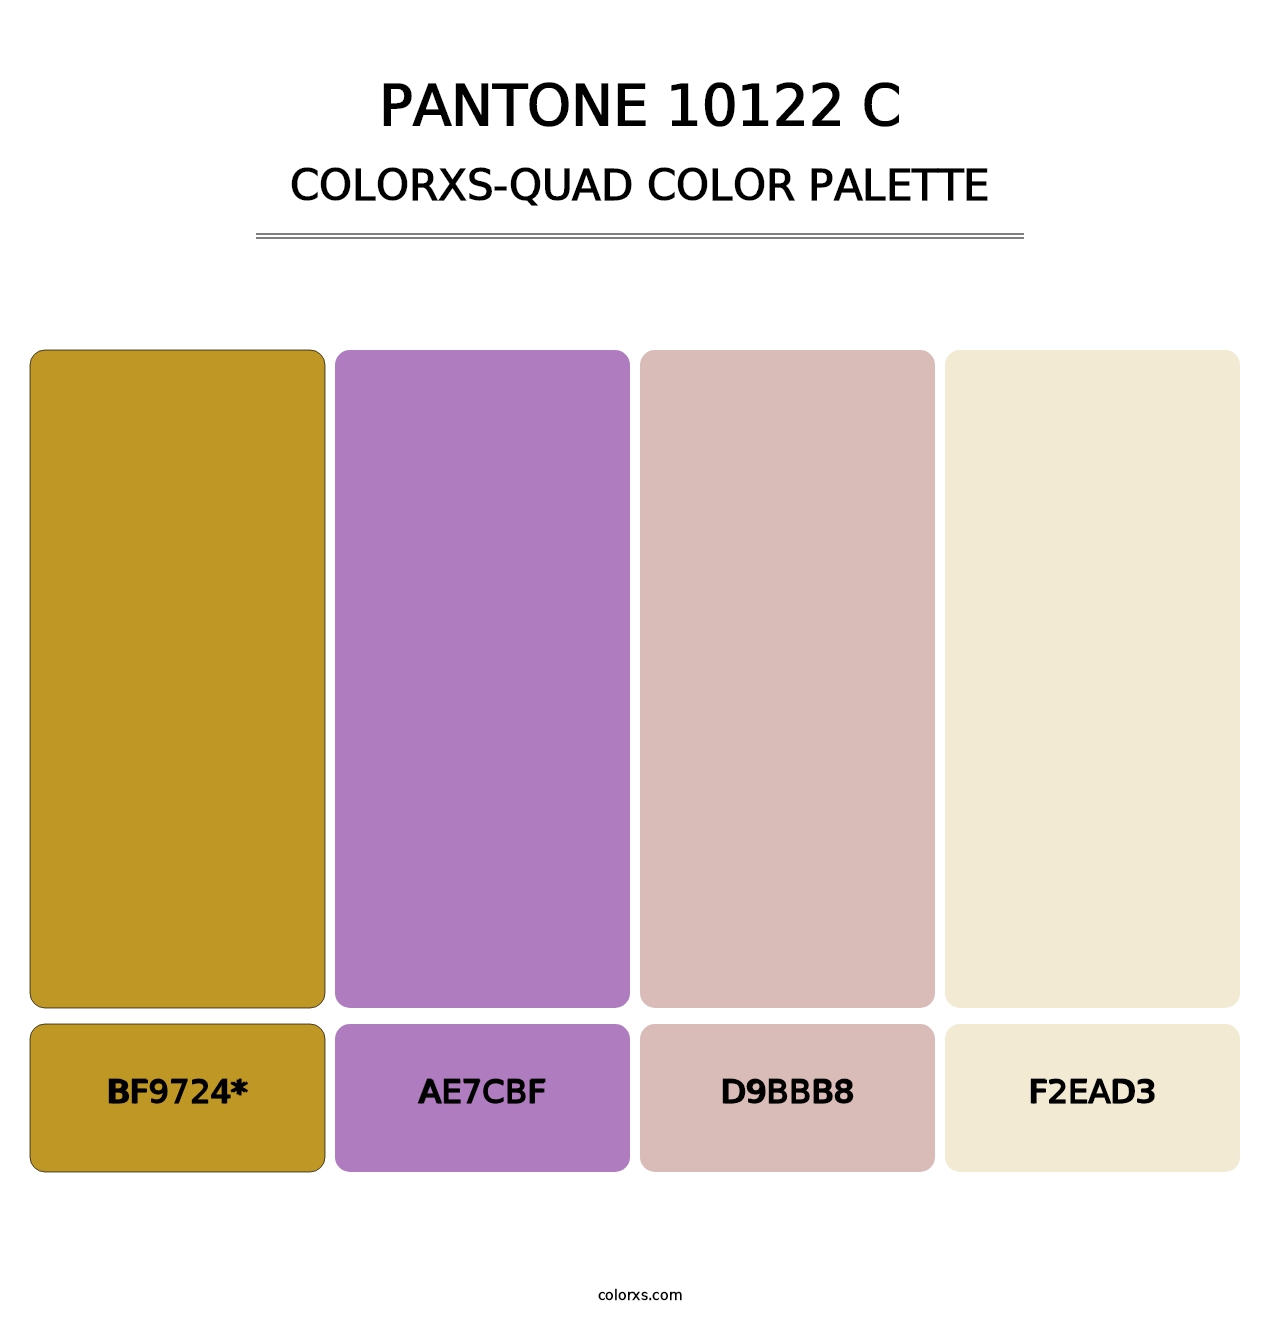 PANTONE 10122 C - Colorxs Quad Palette